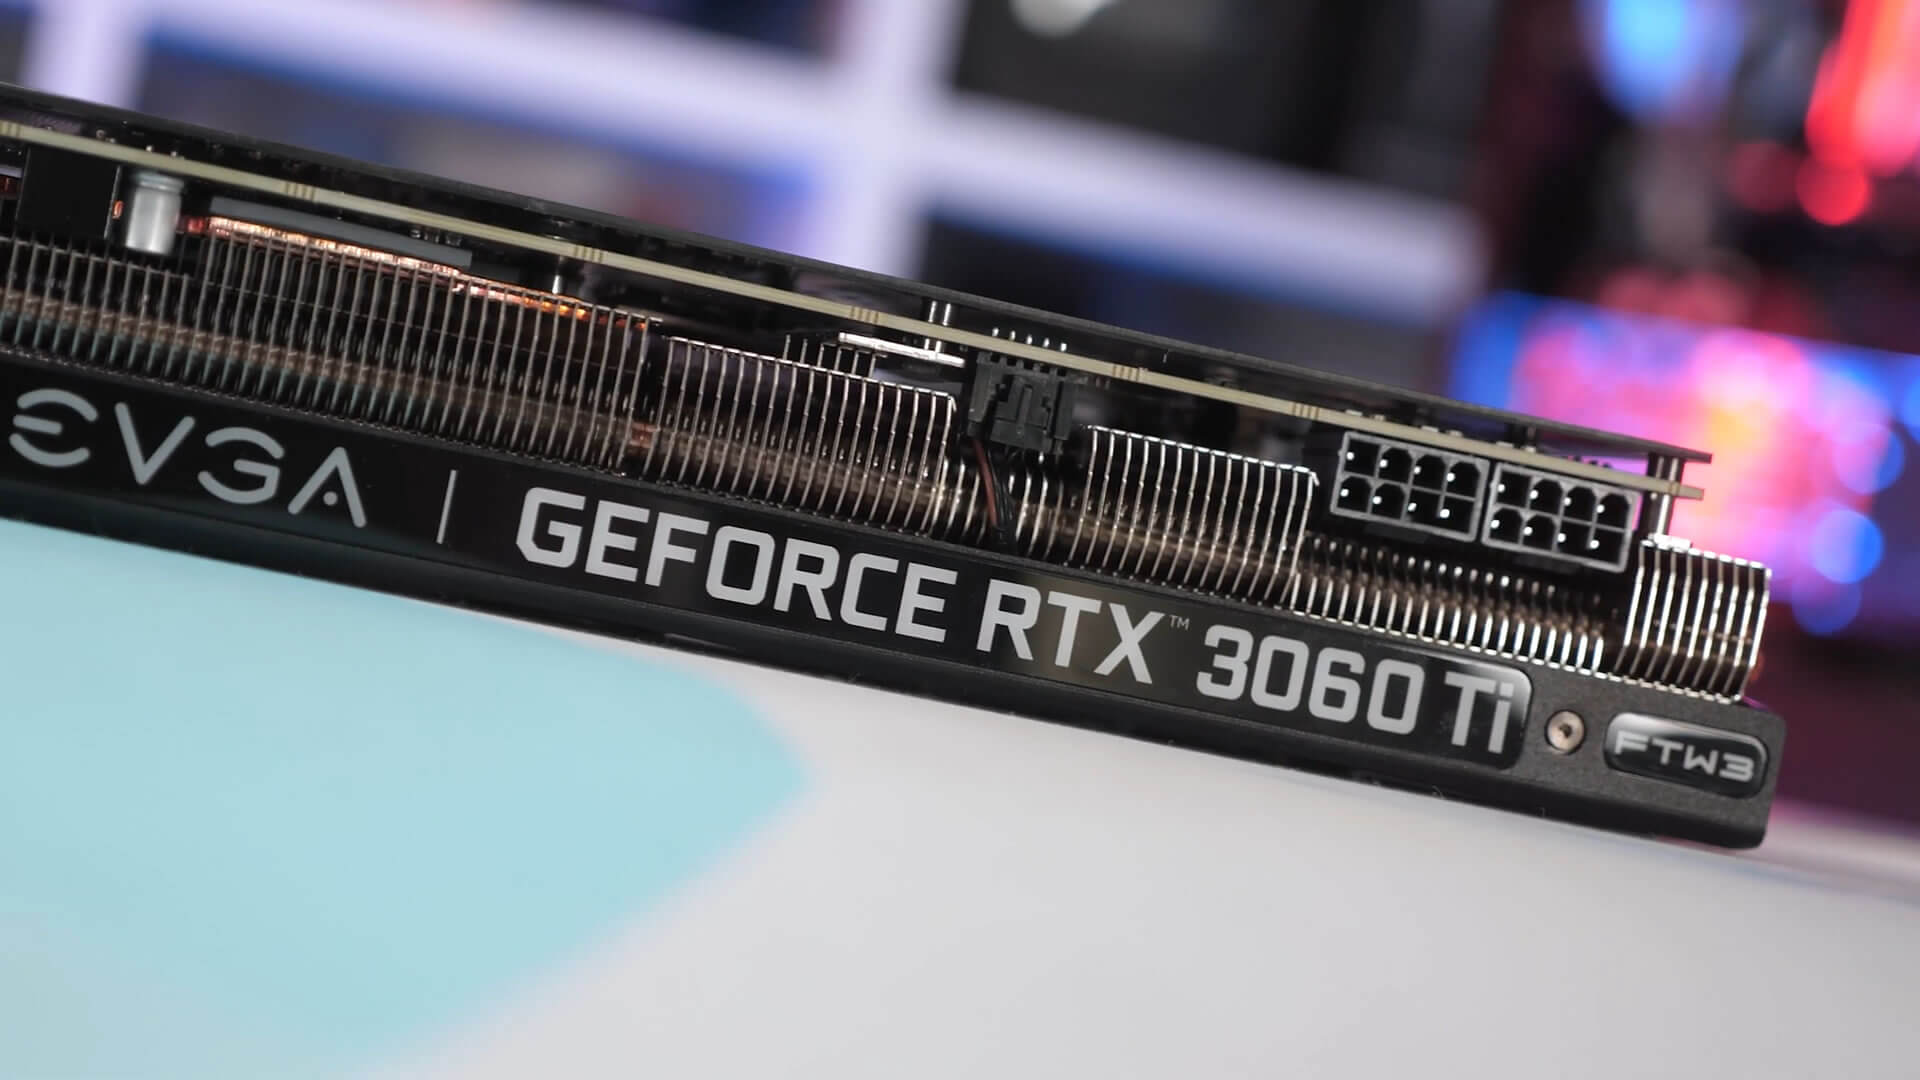 NVIDIA GeForce RTX 3060 Ti cuối cùng cũng ra mắt: mạnh hơn cả 2080 mà giá rẻ hơn